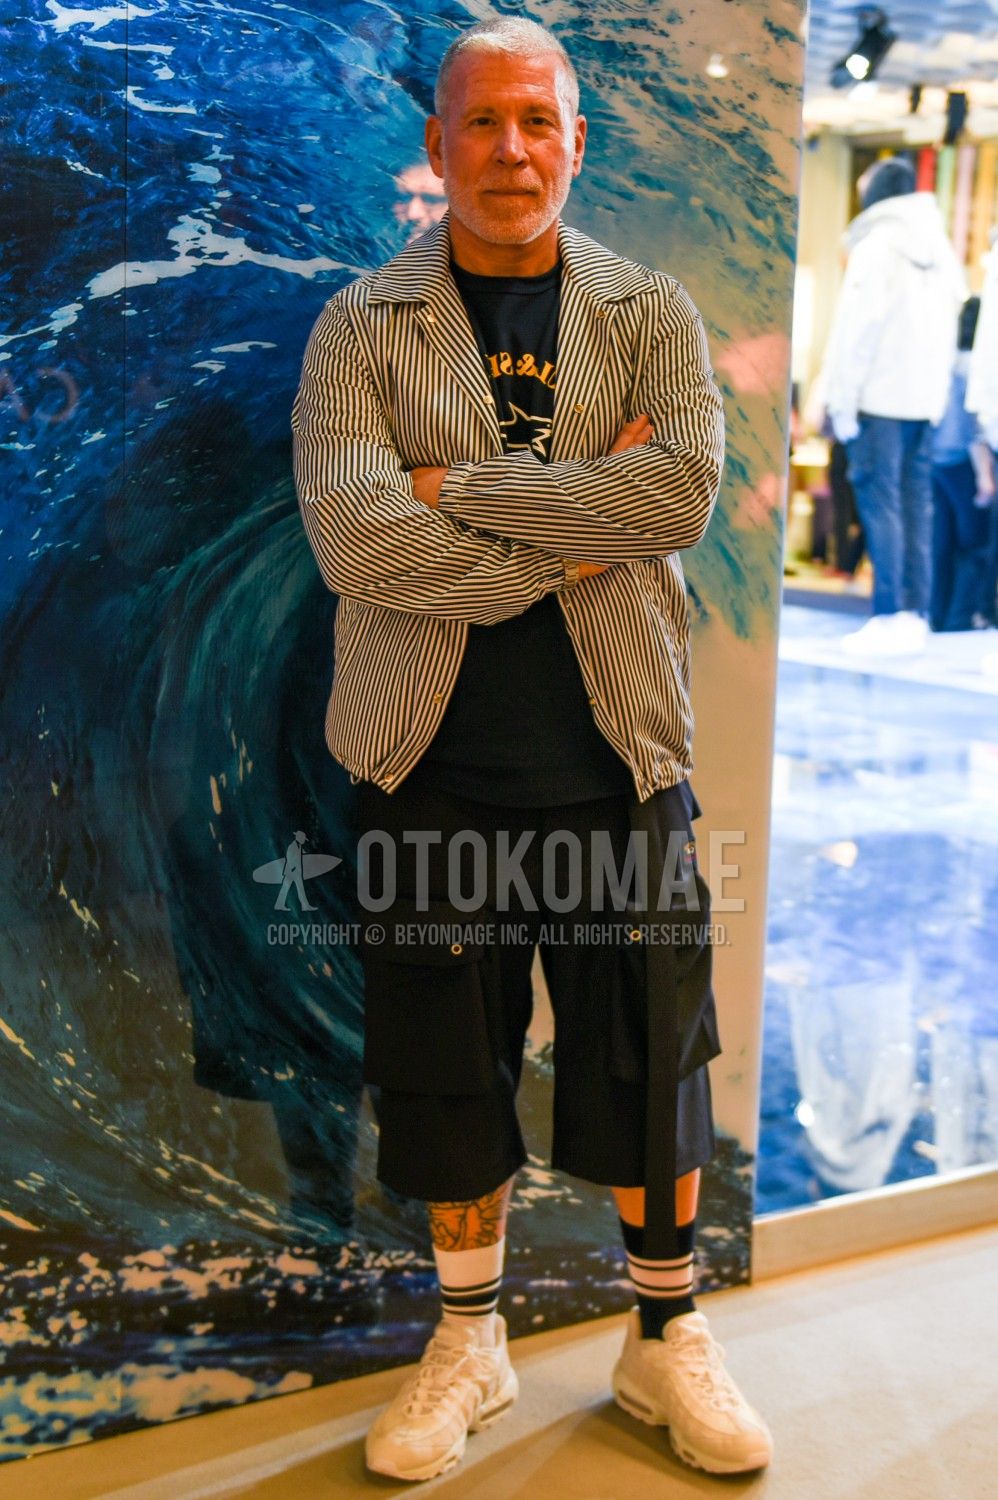 エアマックス コーデ特集 ナイキの人気スニーカーを使ったメンズ着こなしを紹介 メンズファッションメディア Rcjrcj 男前研究所